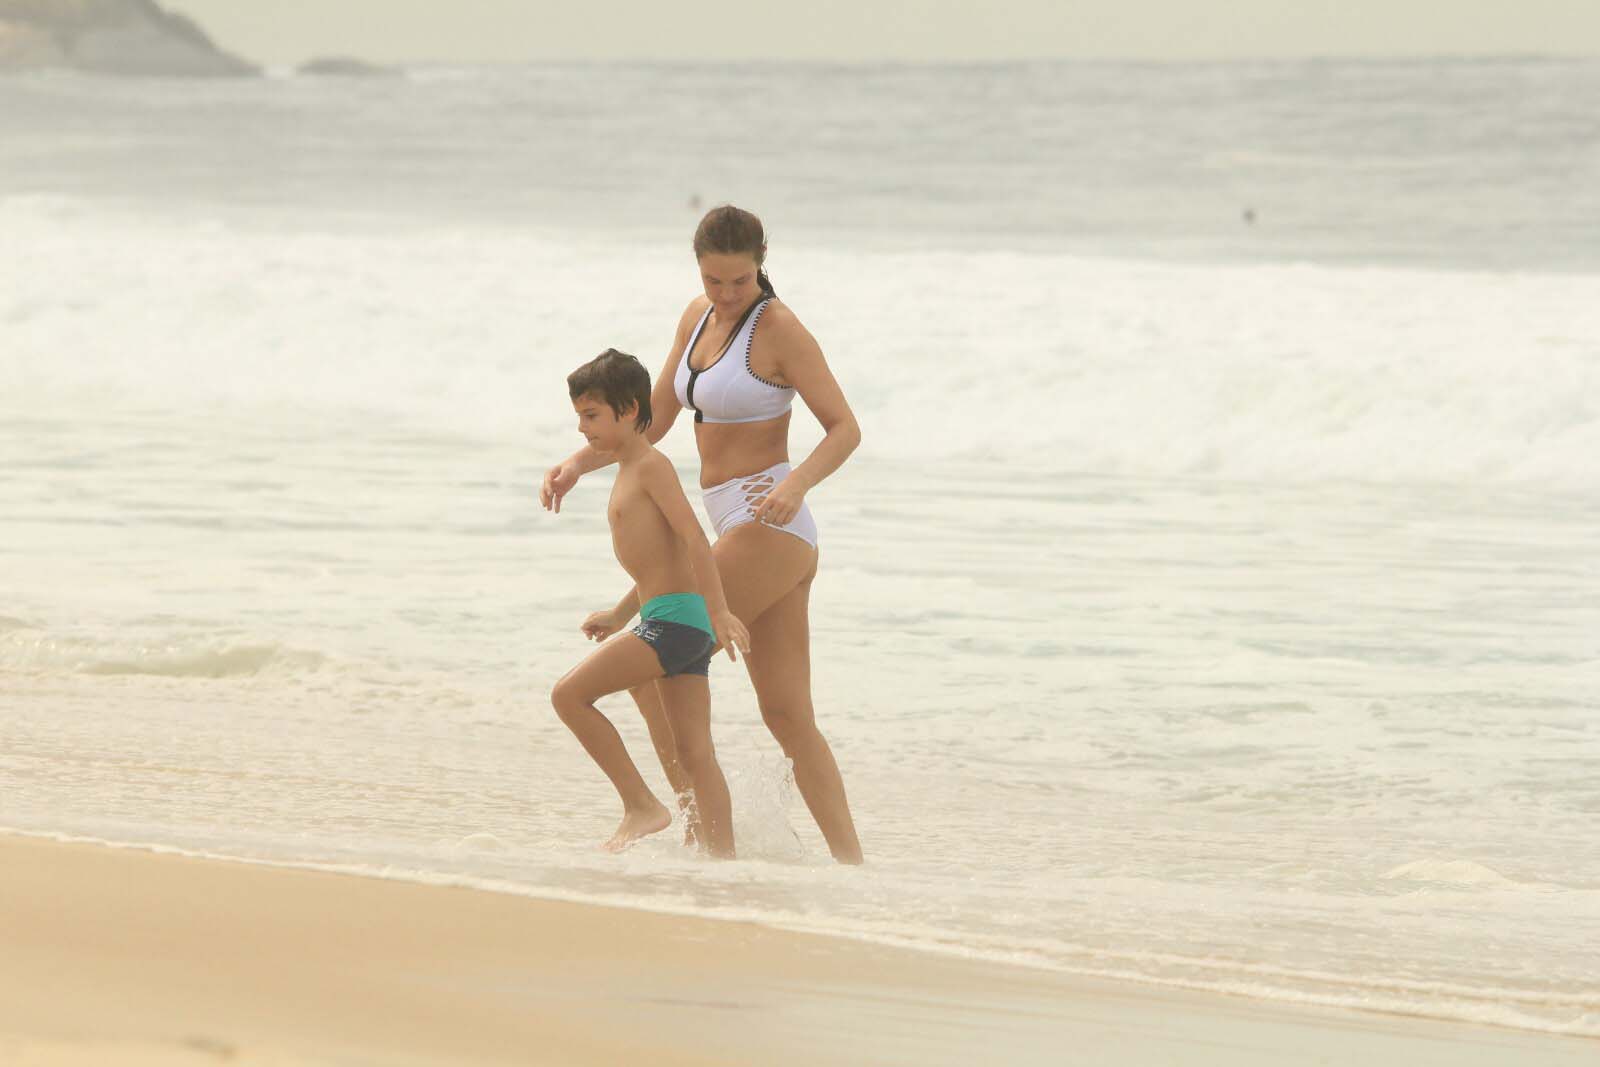 Letícia Birkheuer joga vôlei e curte praia com filho